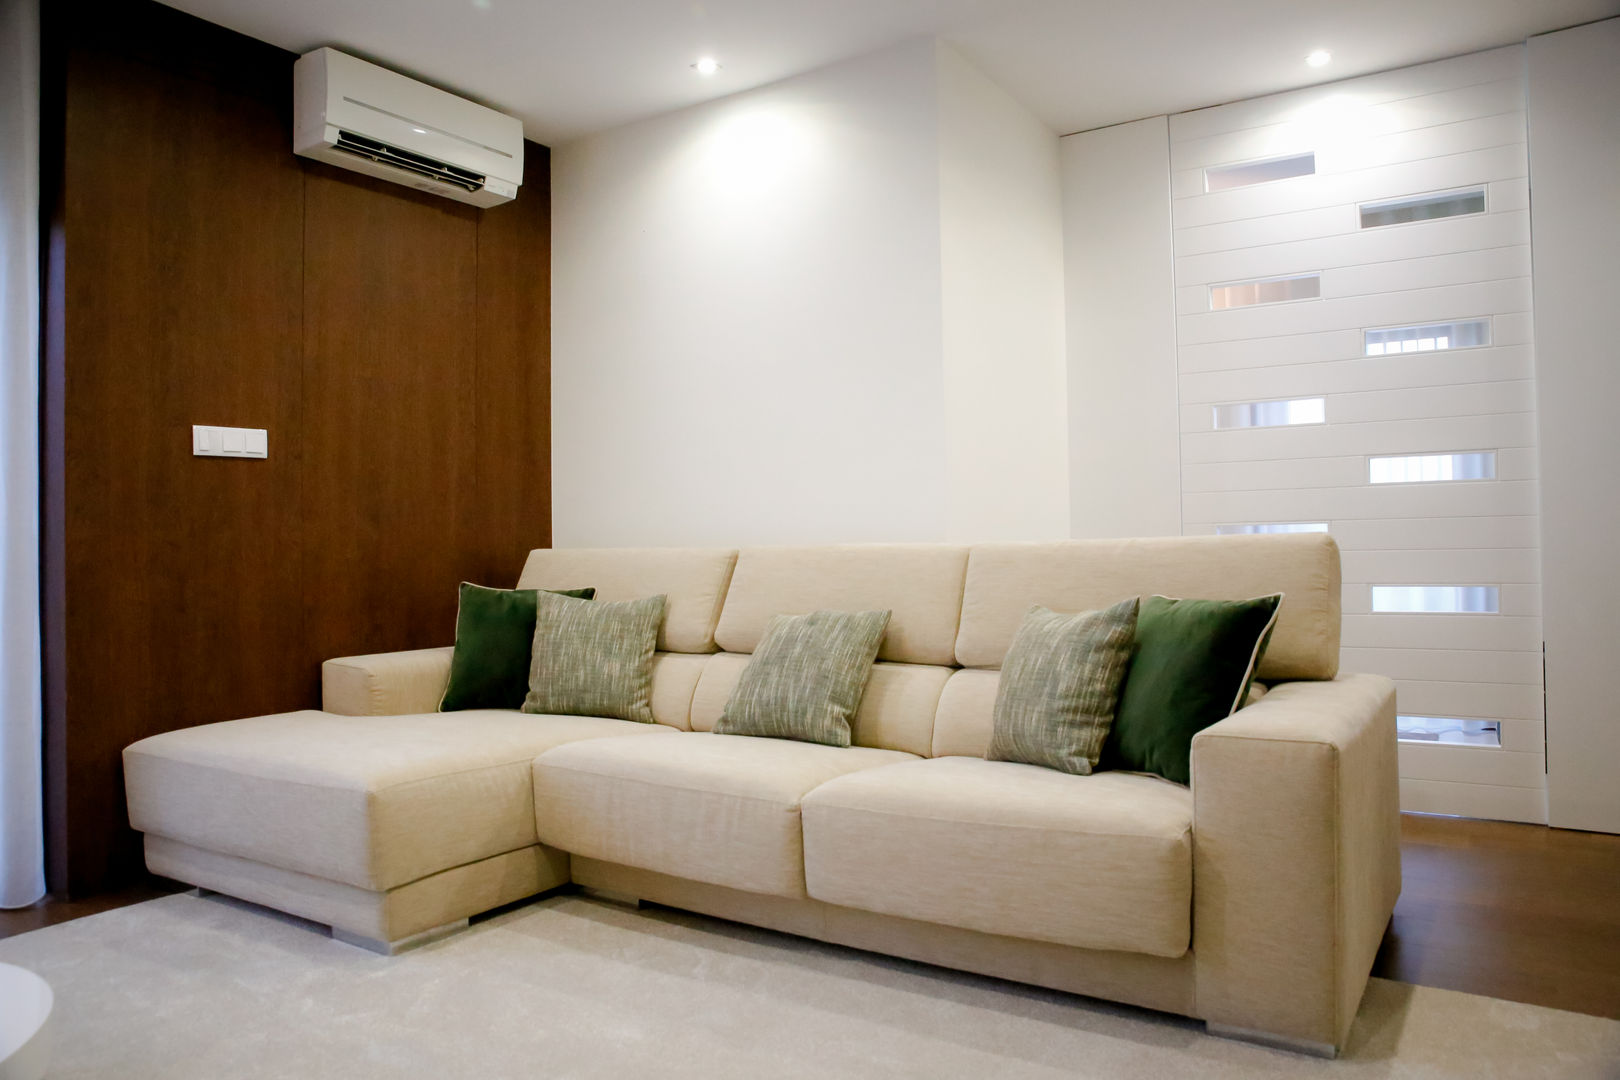 Sala de Estar - Cores Suaves, Musgo Dourado Musgo Dourado Modern living room Sofas & armchairs